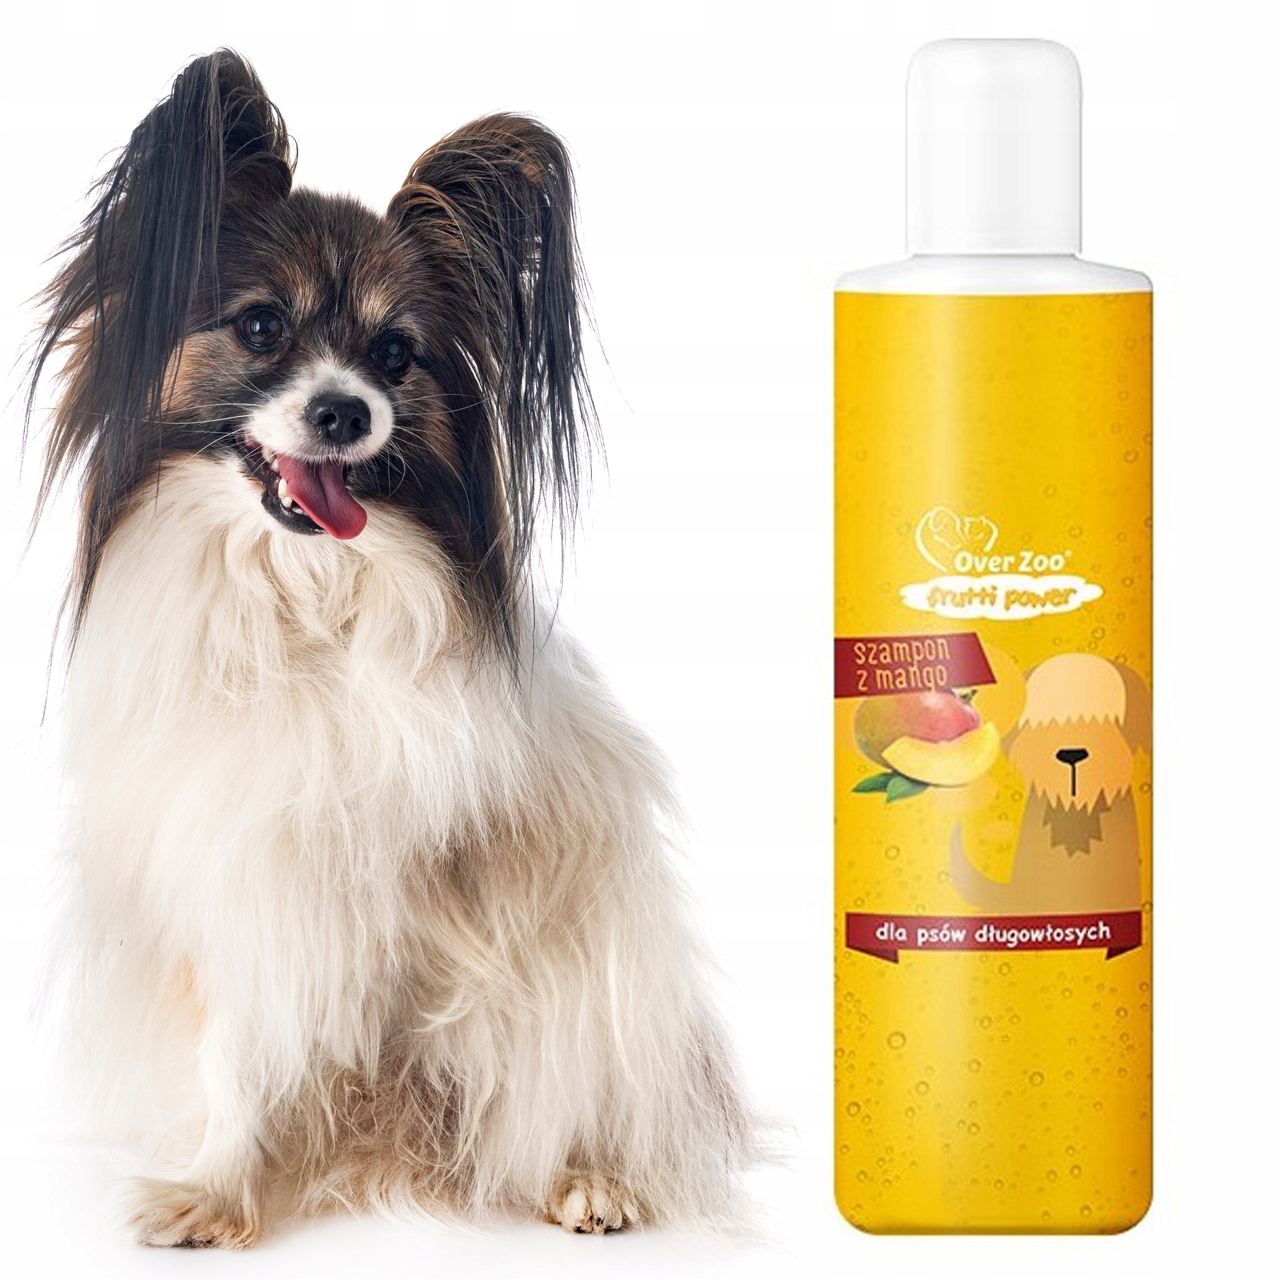 zapachowy szampon dla psa